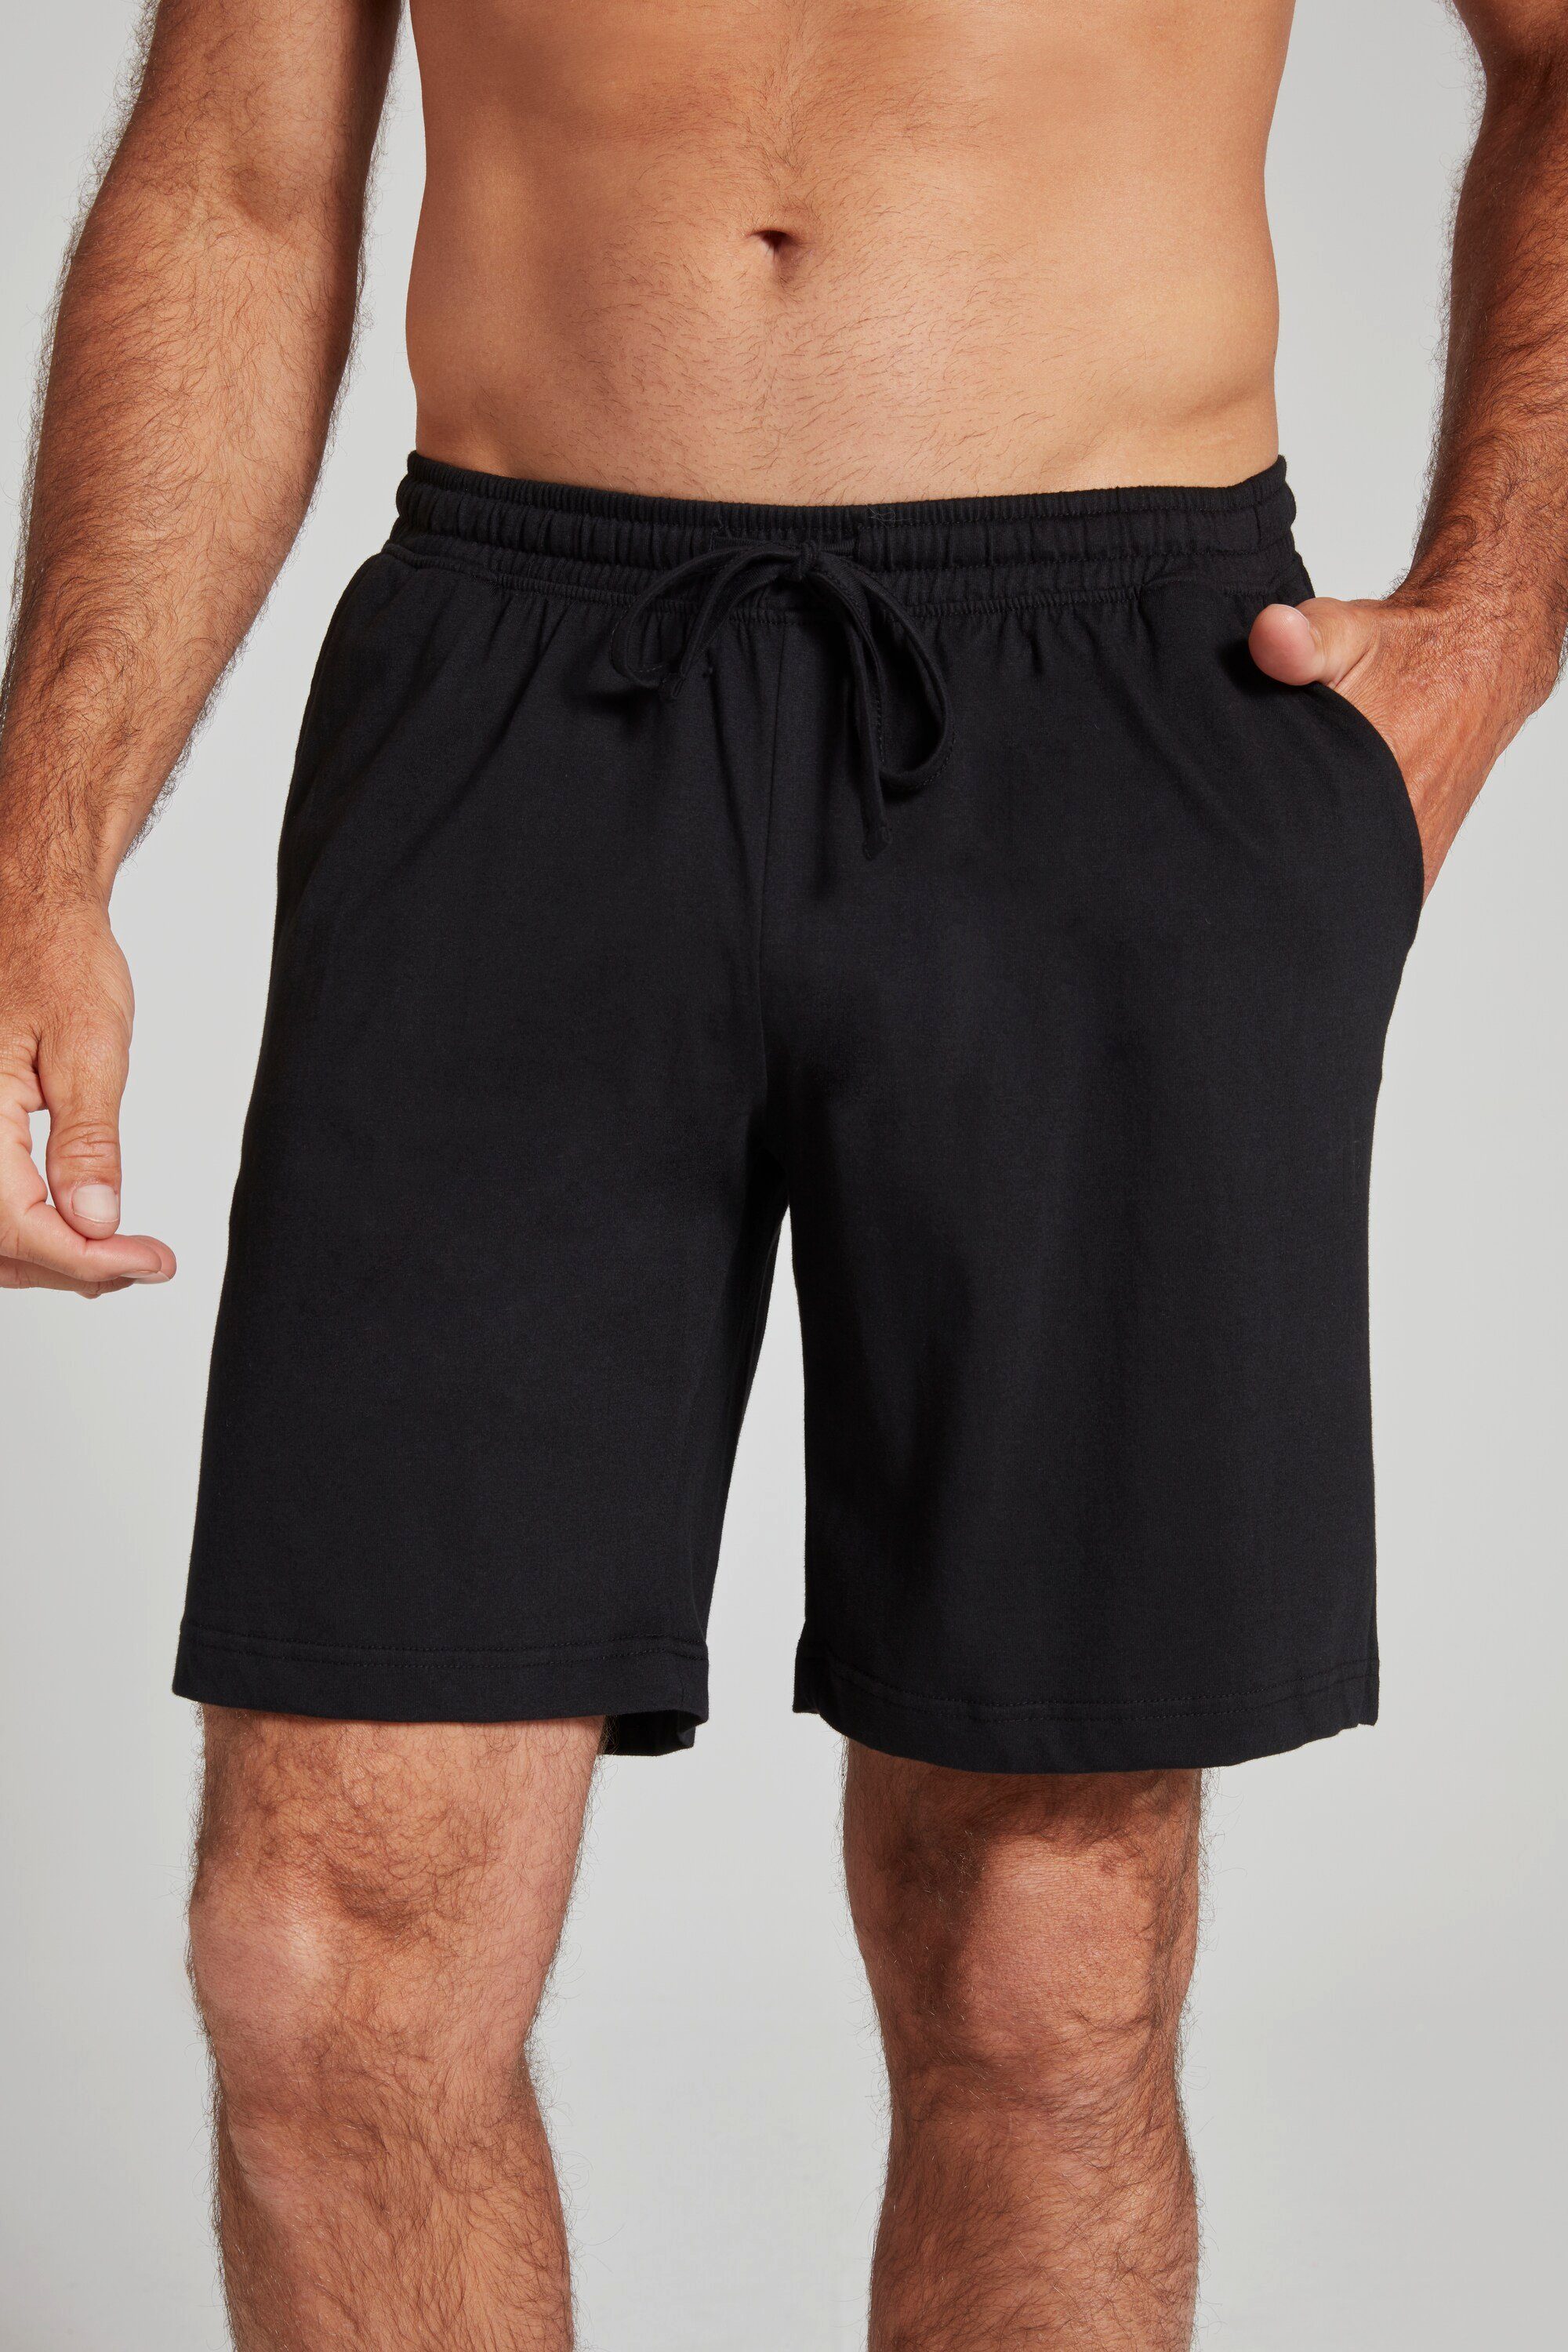 JP1880 schwarz Schlafanzug Homewear Schlafanzug Elastikbund Shorts Hose